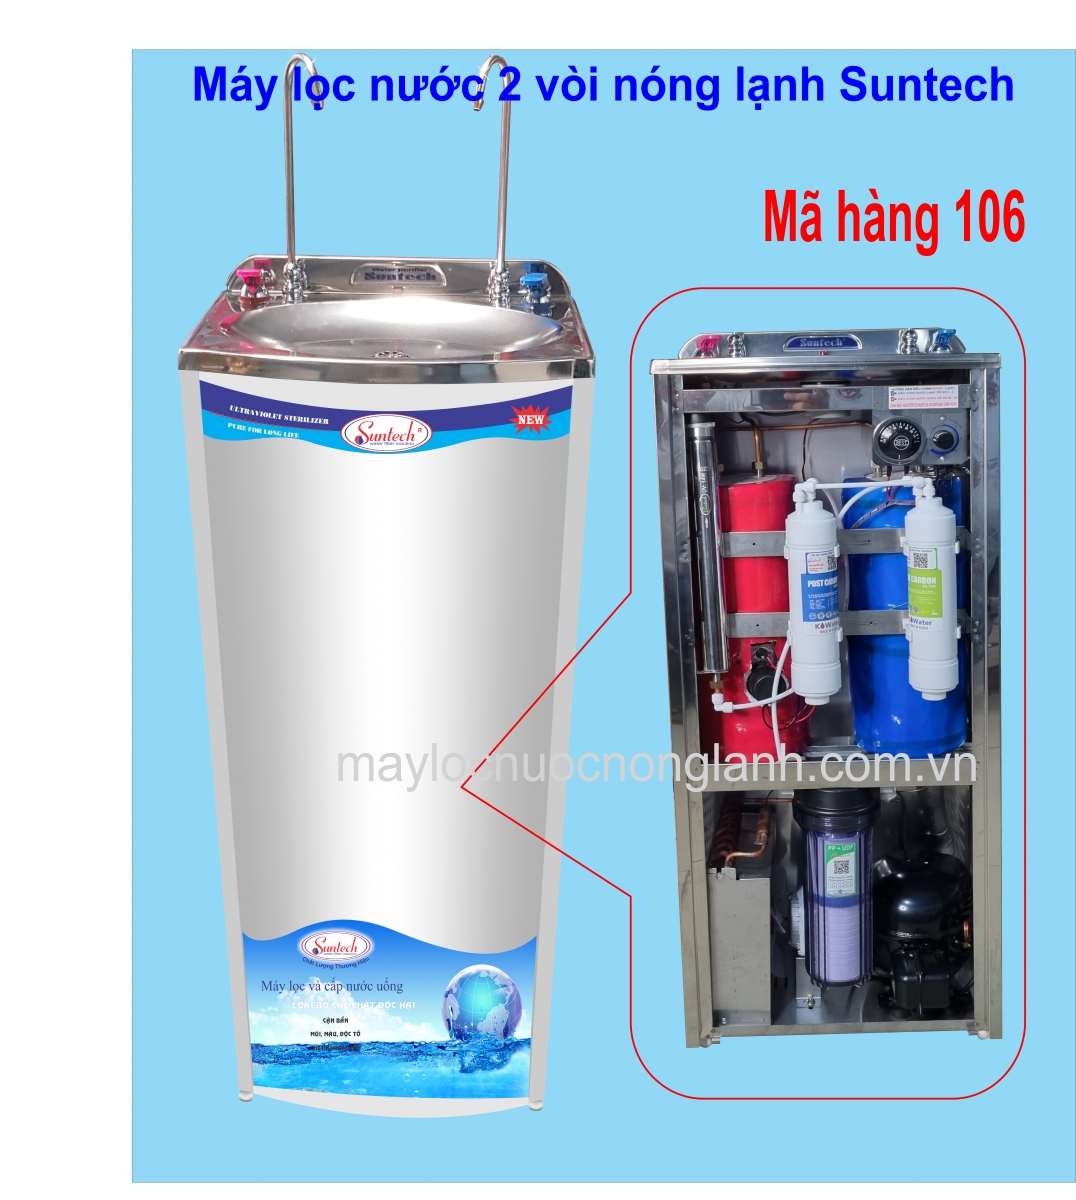 Máy lọc nước 2 vòi nóng lạnh TL-01HCO 106